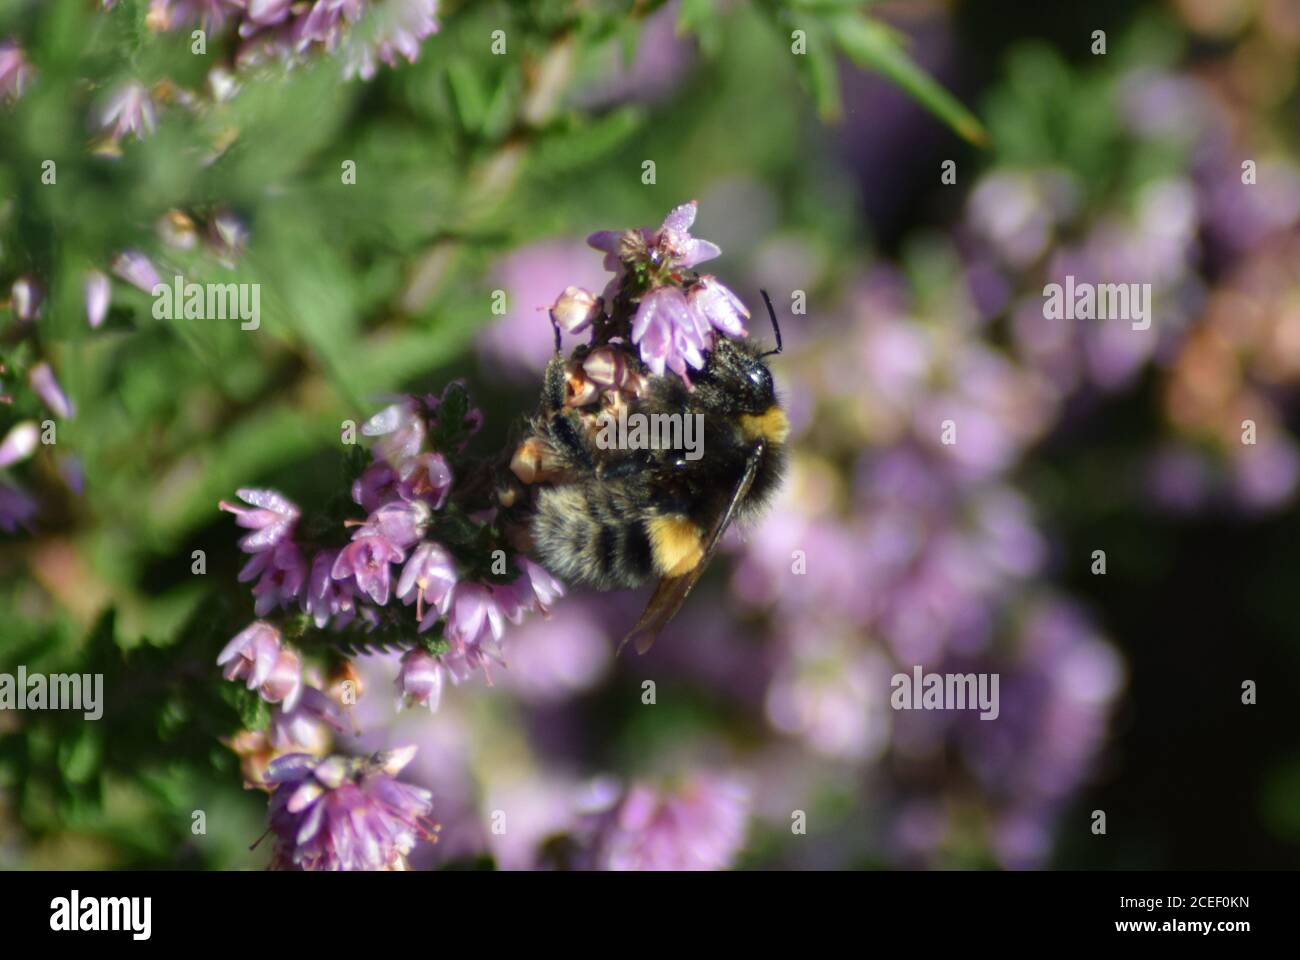 bumblebee on heather Stock Photo